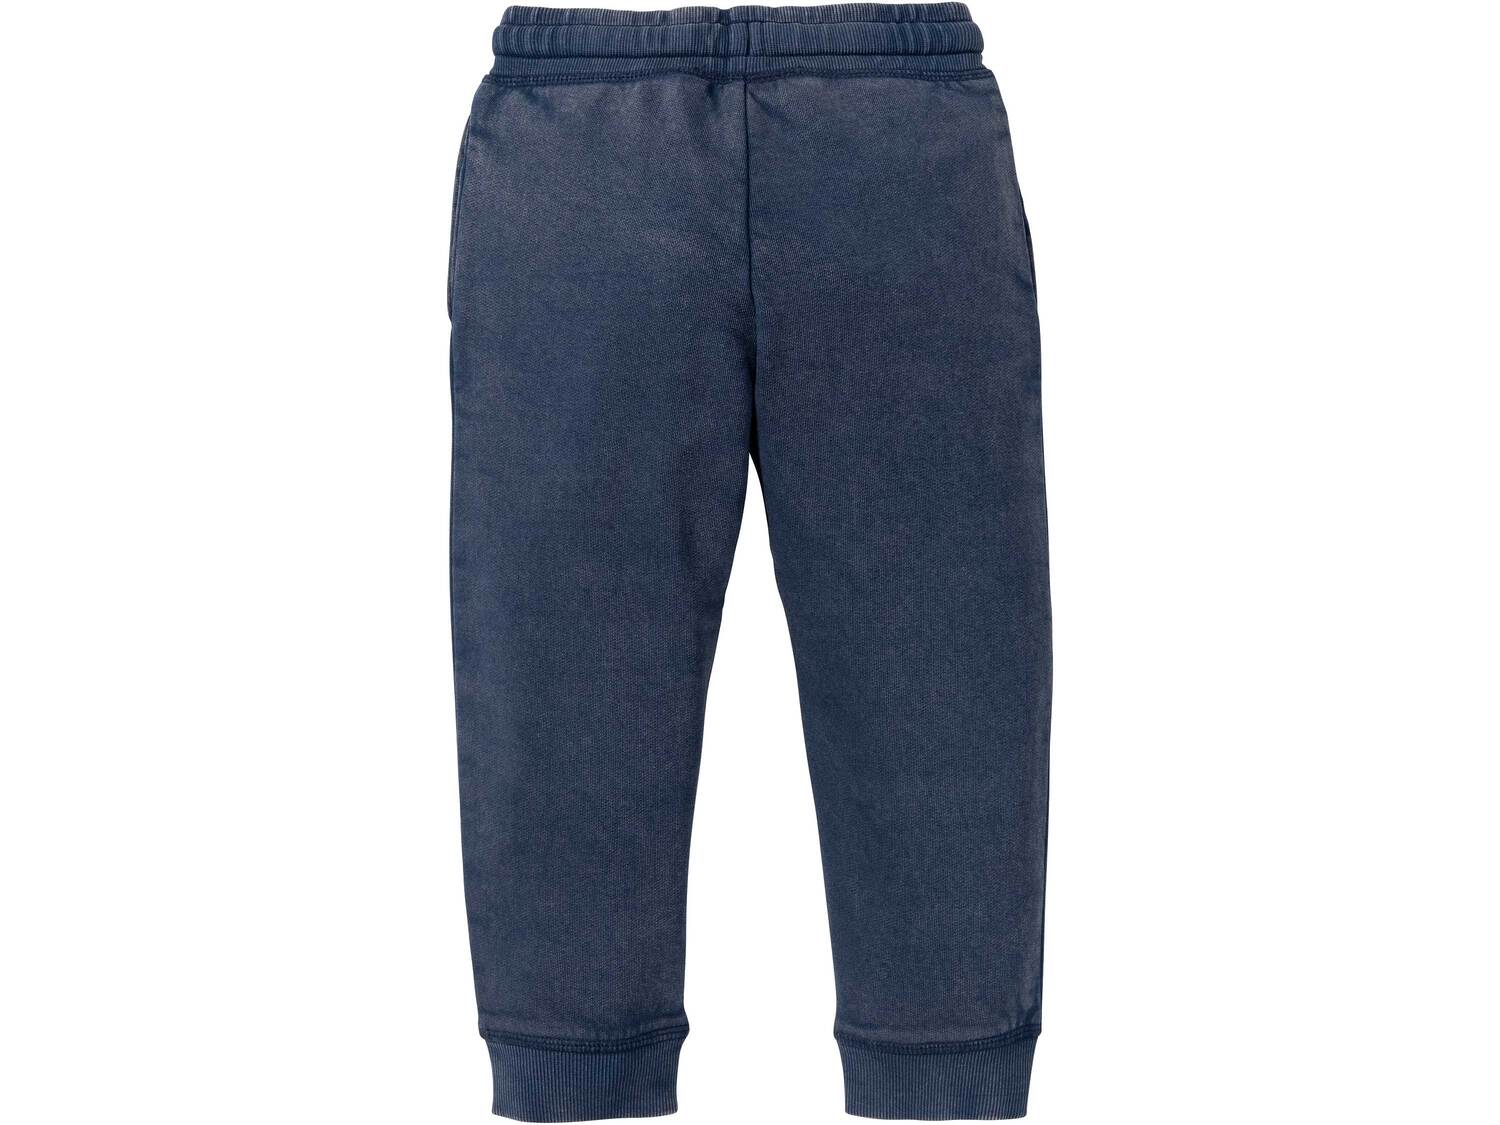 Spodnie dresowe chłopięce Lupilu, cena 14,99 PLN 
- rozmiary: 96-116
- wysoka ...